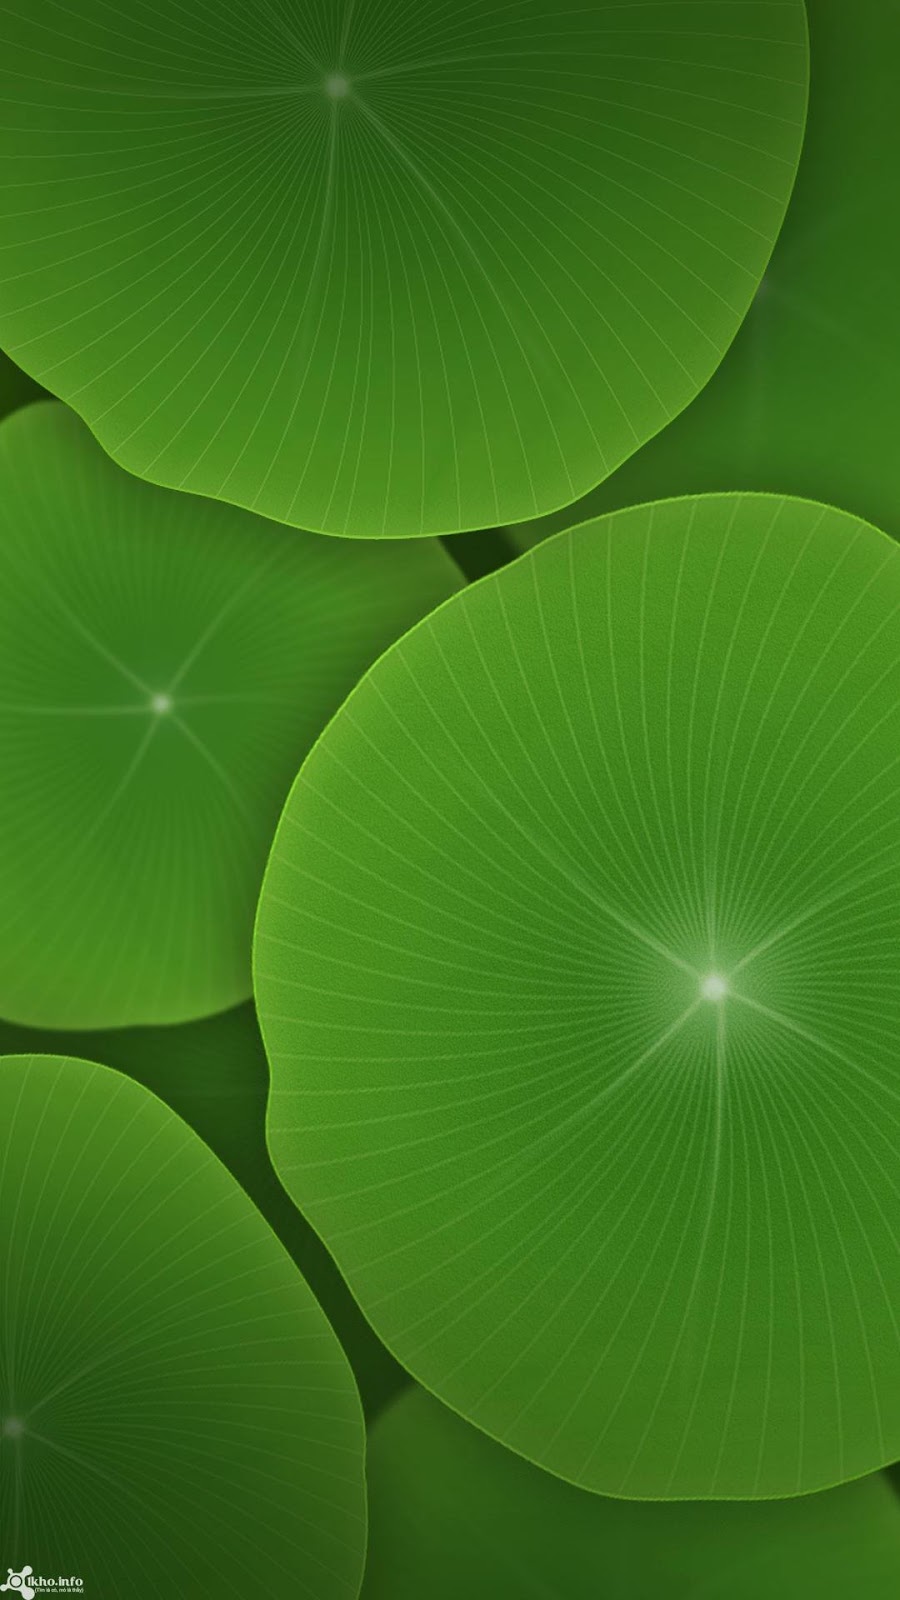 hình ảnh  cây thực vật Lá màu xanh lá Thường xanh Nhà máy thuỷ sản  Hệ thực vật Cây cỏ Cây bụi Lớp bao phủ bề mặt Cơ thể Hình nền